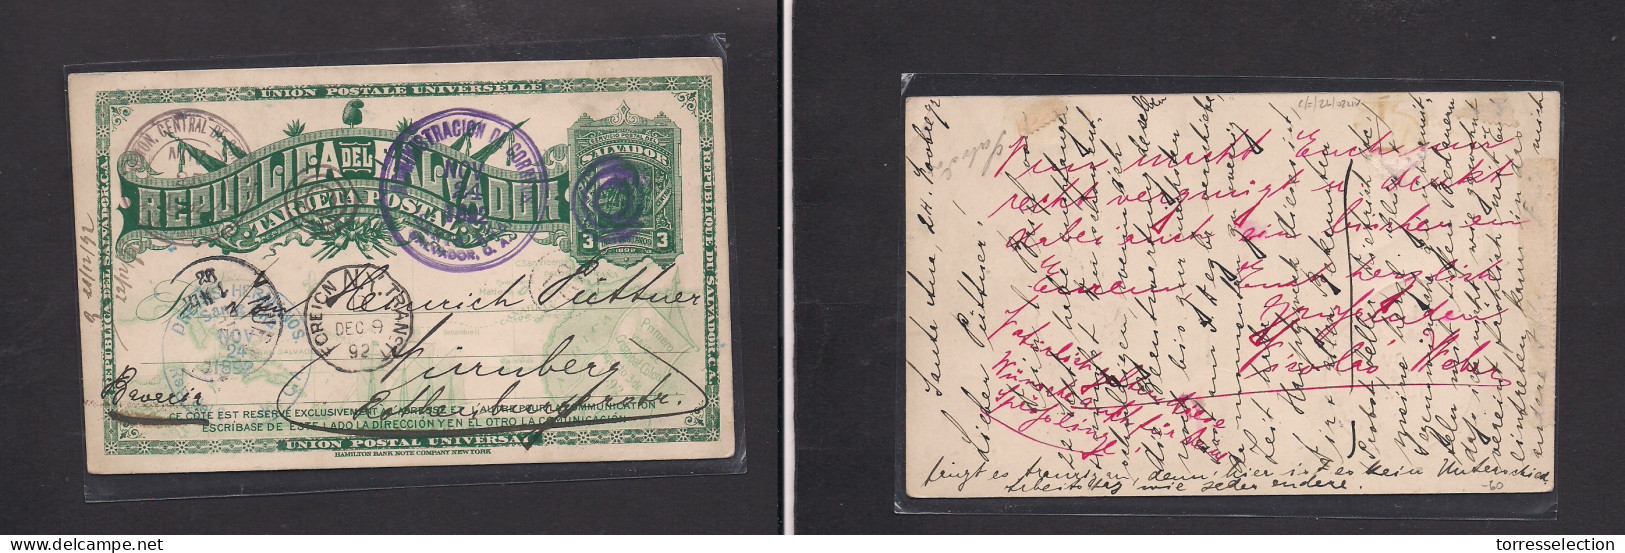 SALVADOR, EL. 1892 (24 Nov) Santa Ana - Germany, Nuremberg 3c Green Stat Card. Via NY. - El Salvador